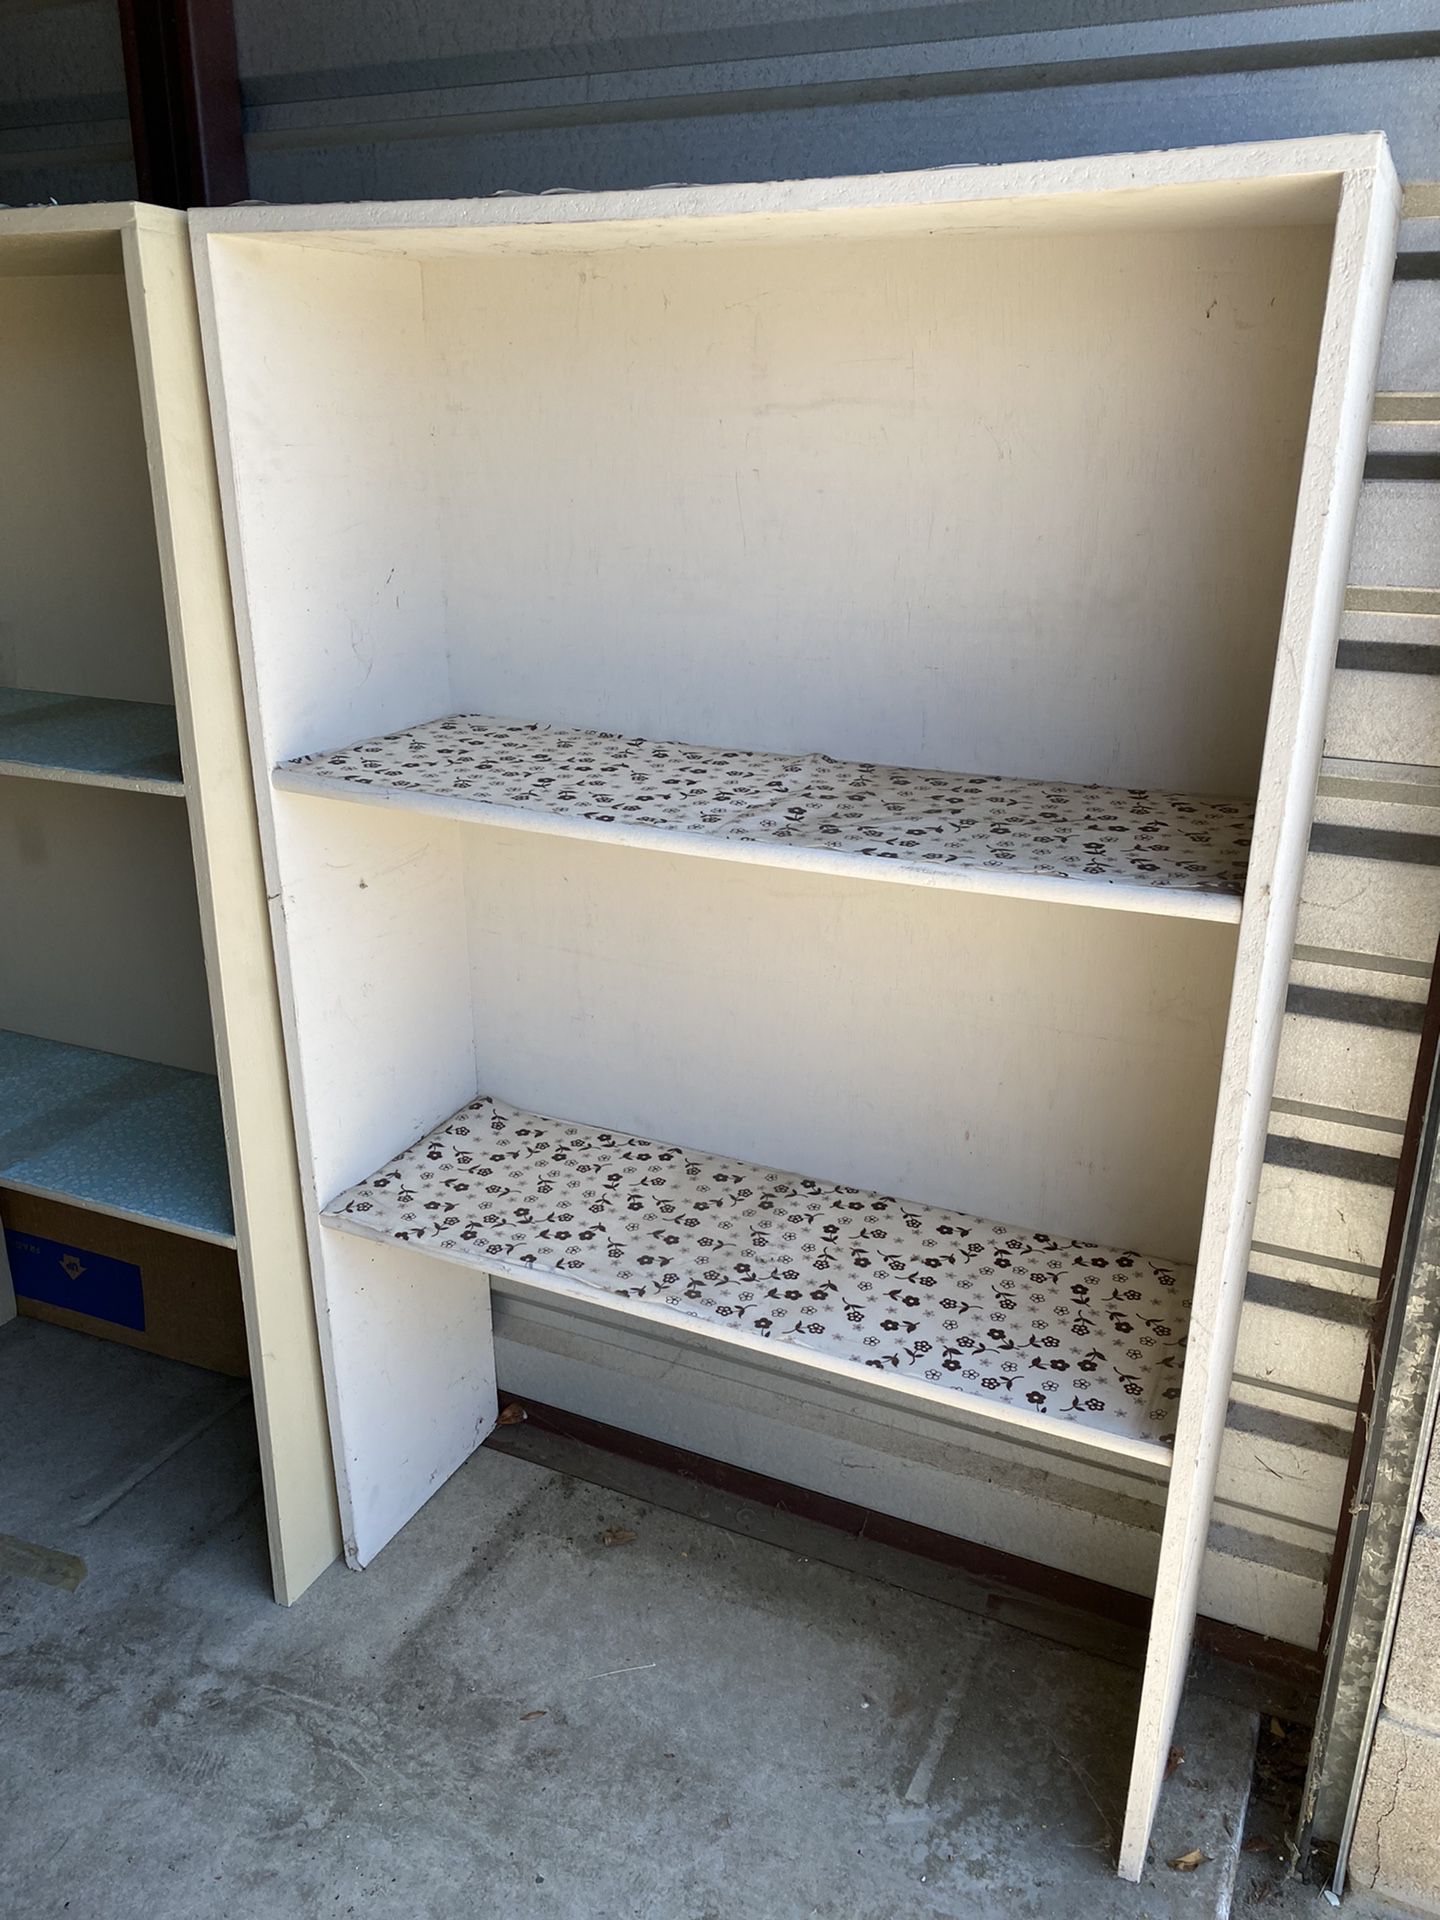 FREE Shelf Unit For Closet Or Garage!!!